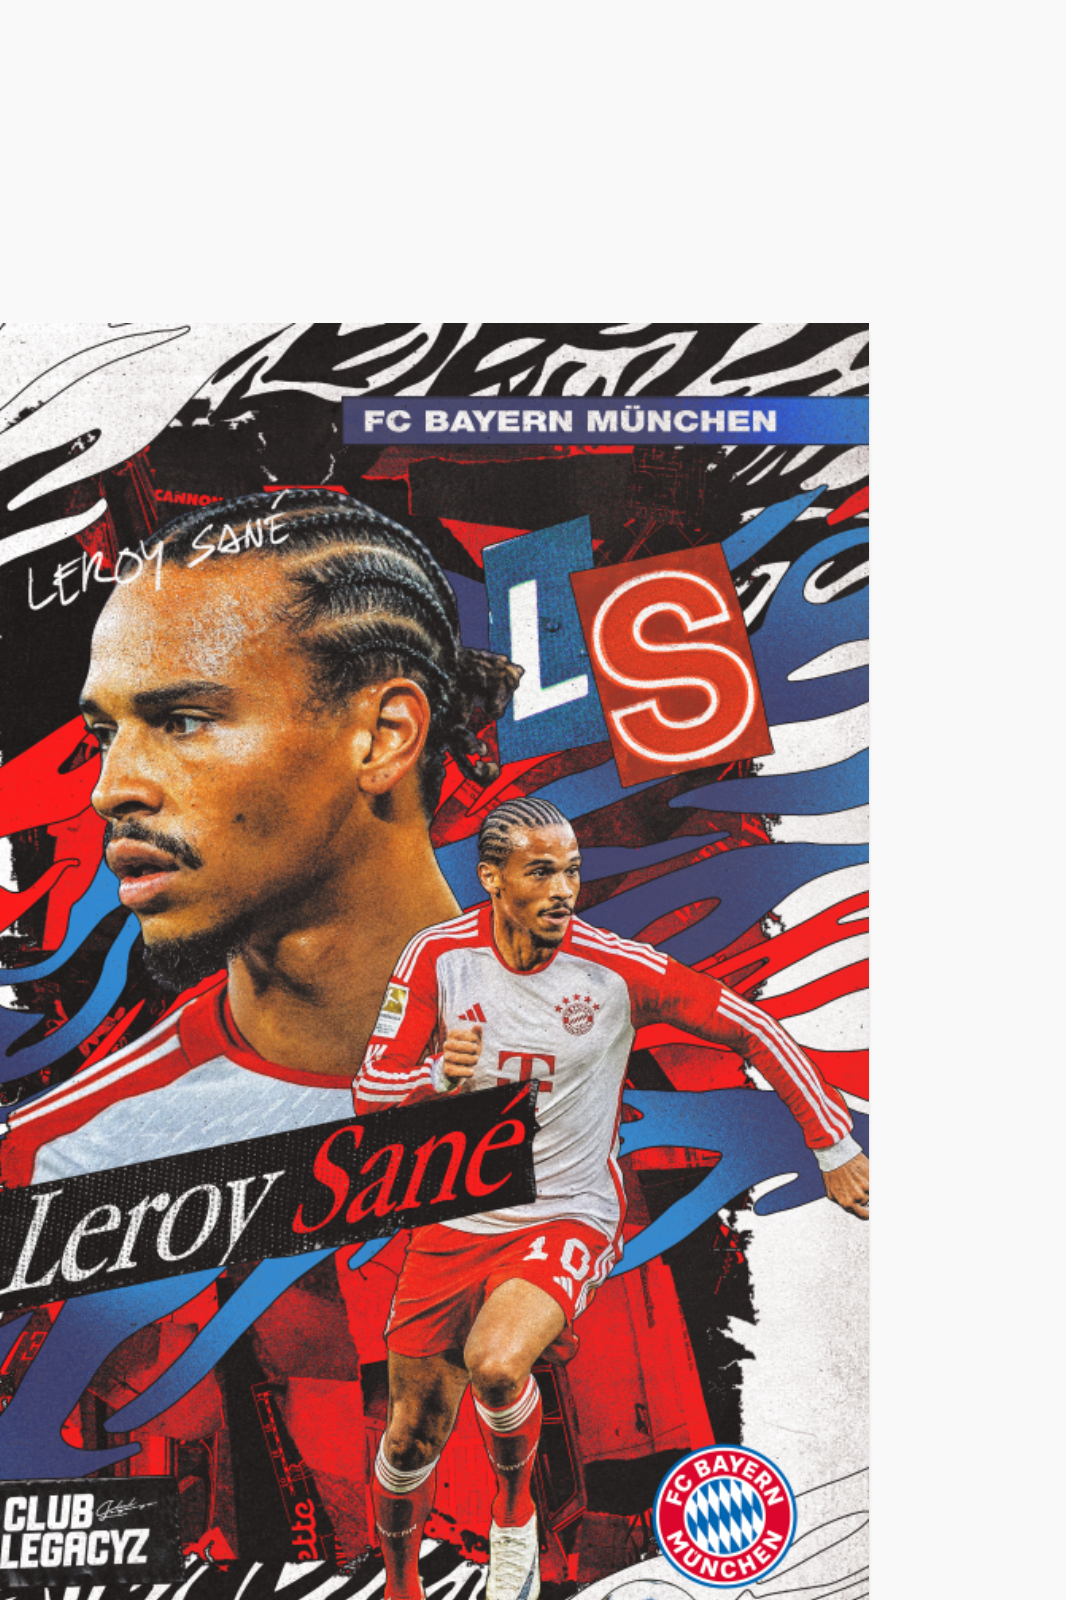 FC Bayern München - Leroy Sané Poster limited to 100